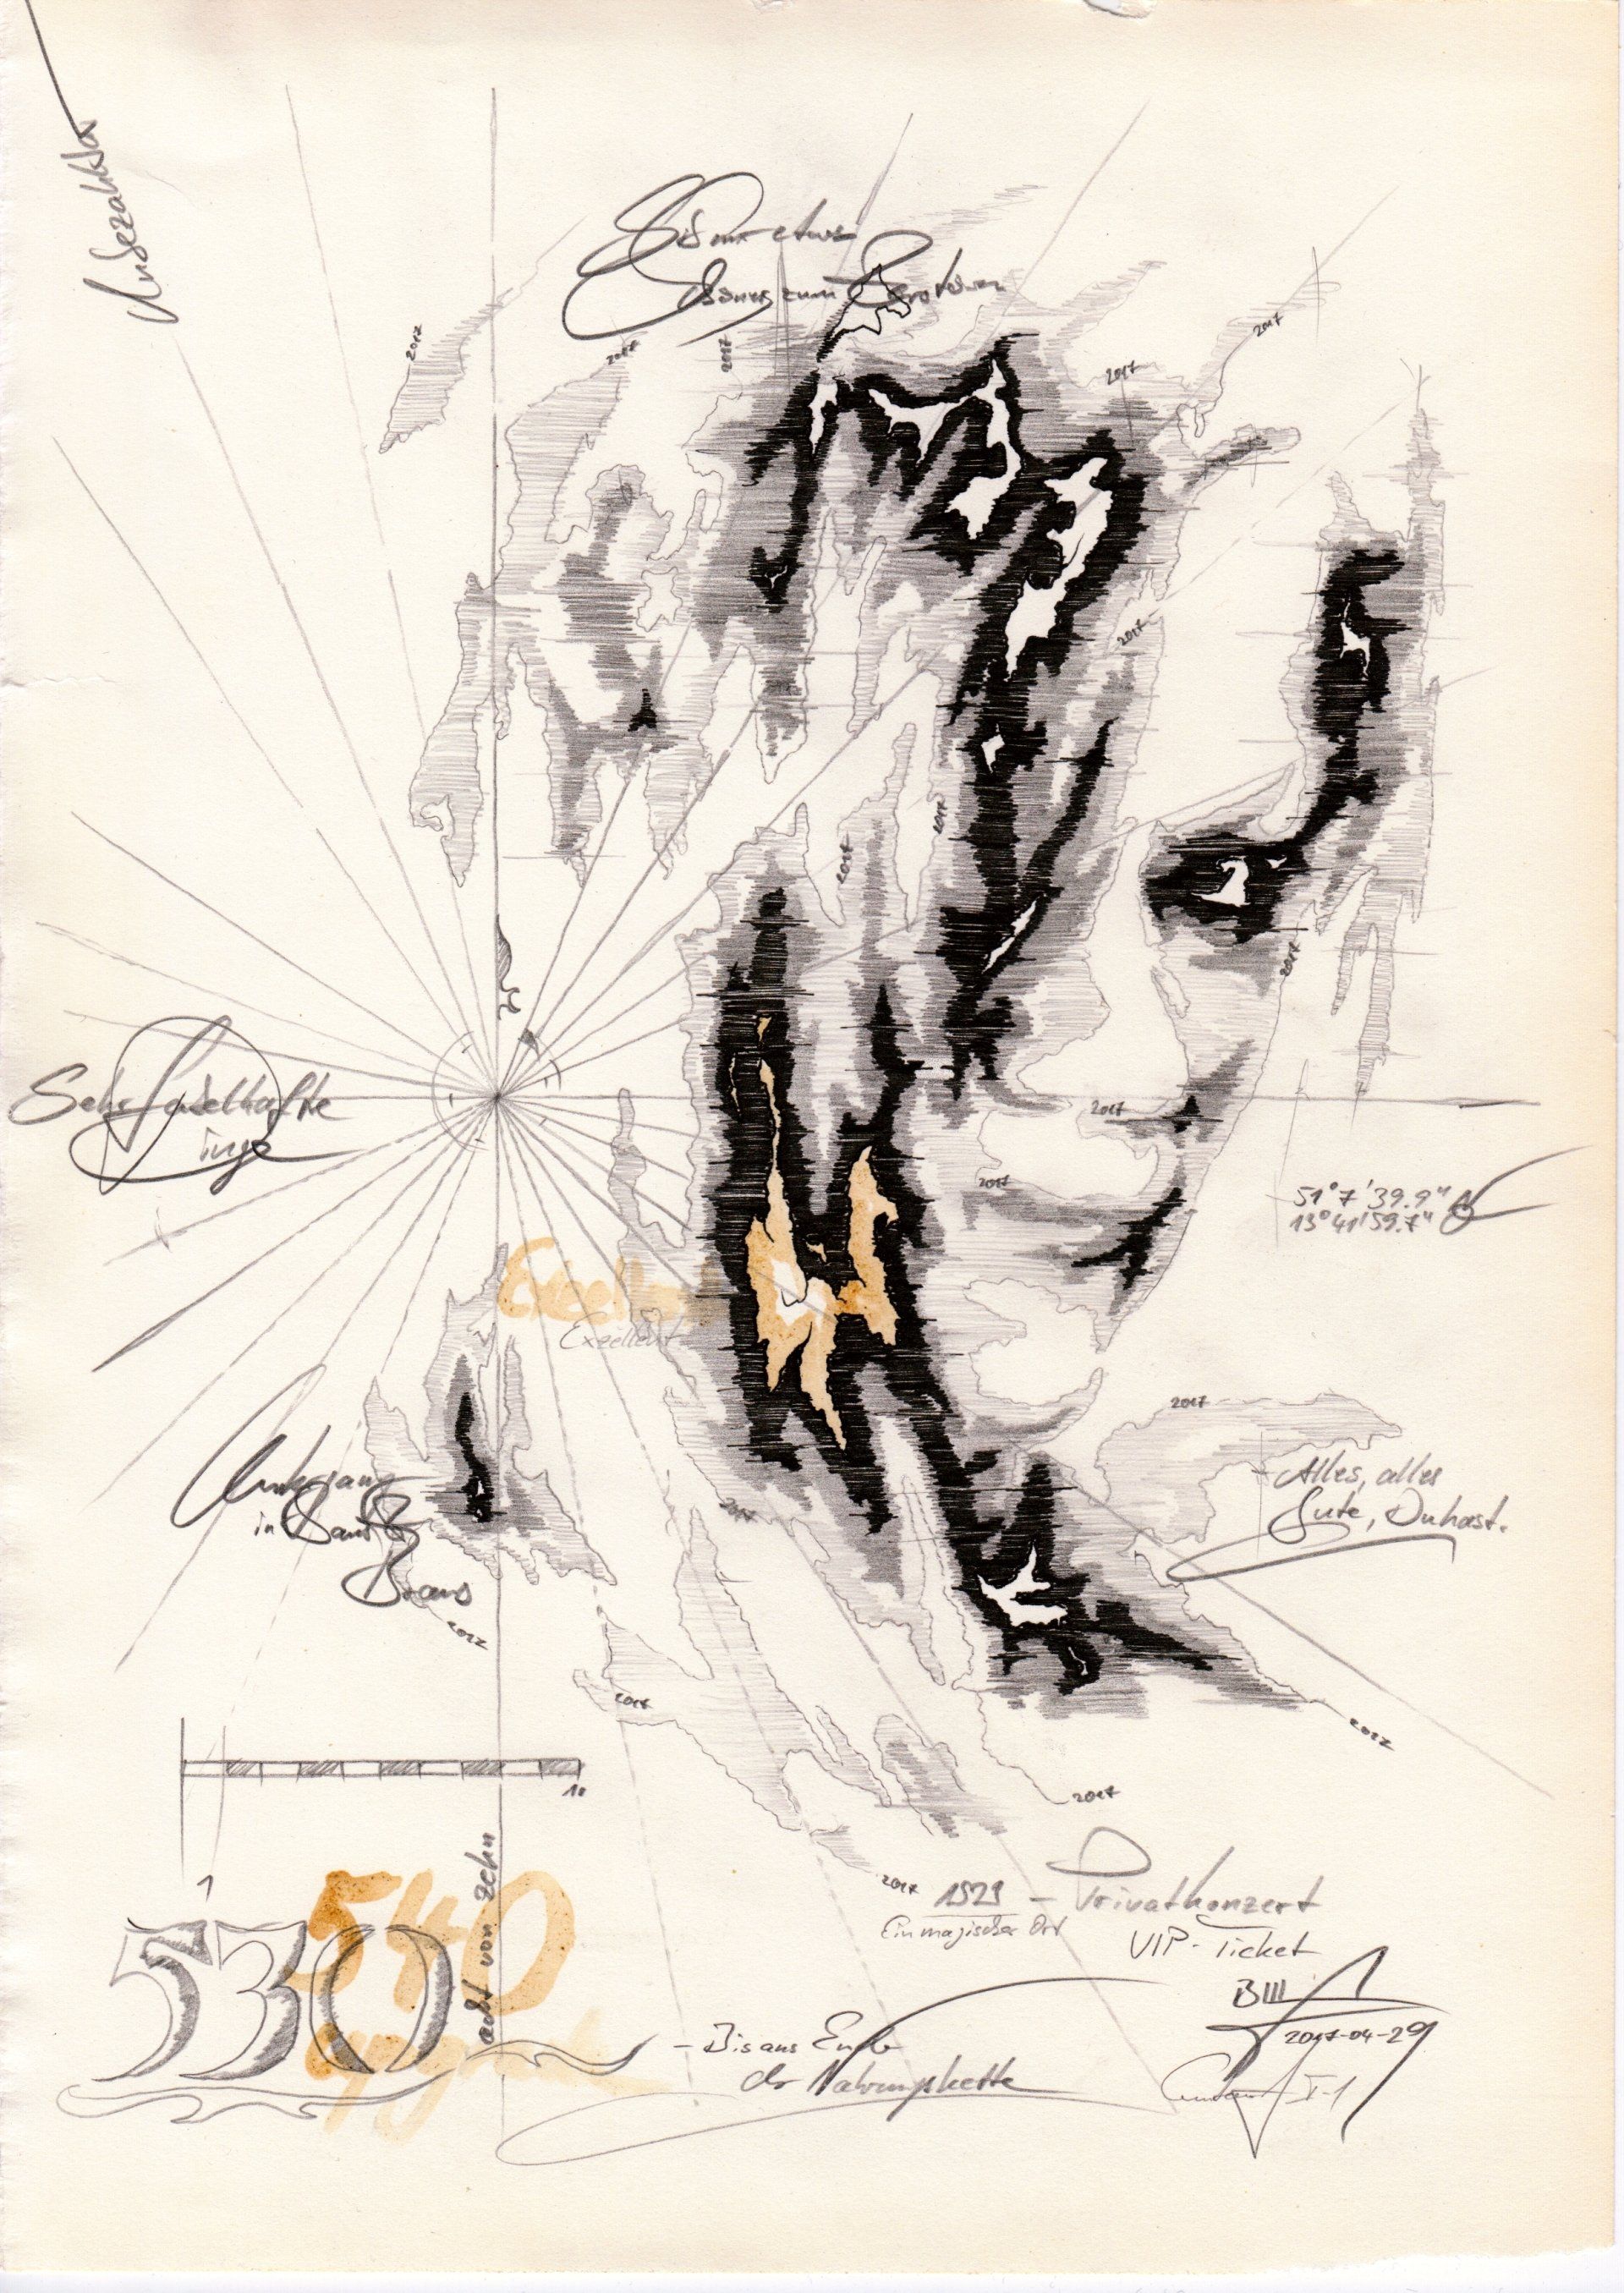 Zeichnung eine weiblichens Gesichtes als Seekarte in Tusche und Bleistift von Bill d'Amacha